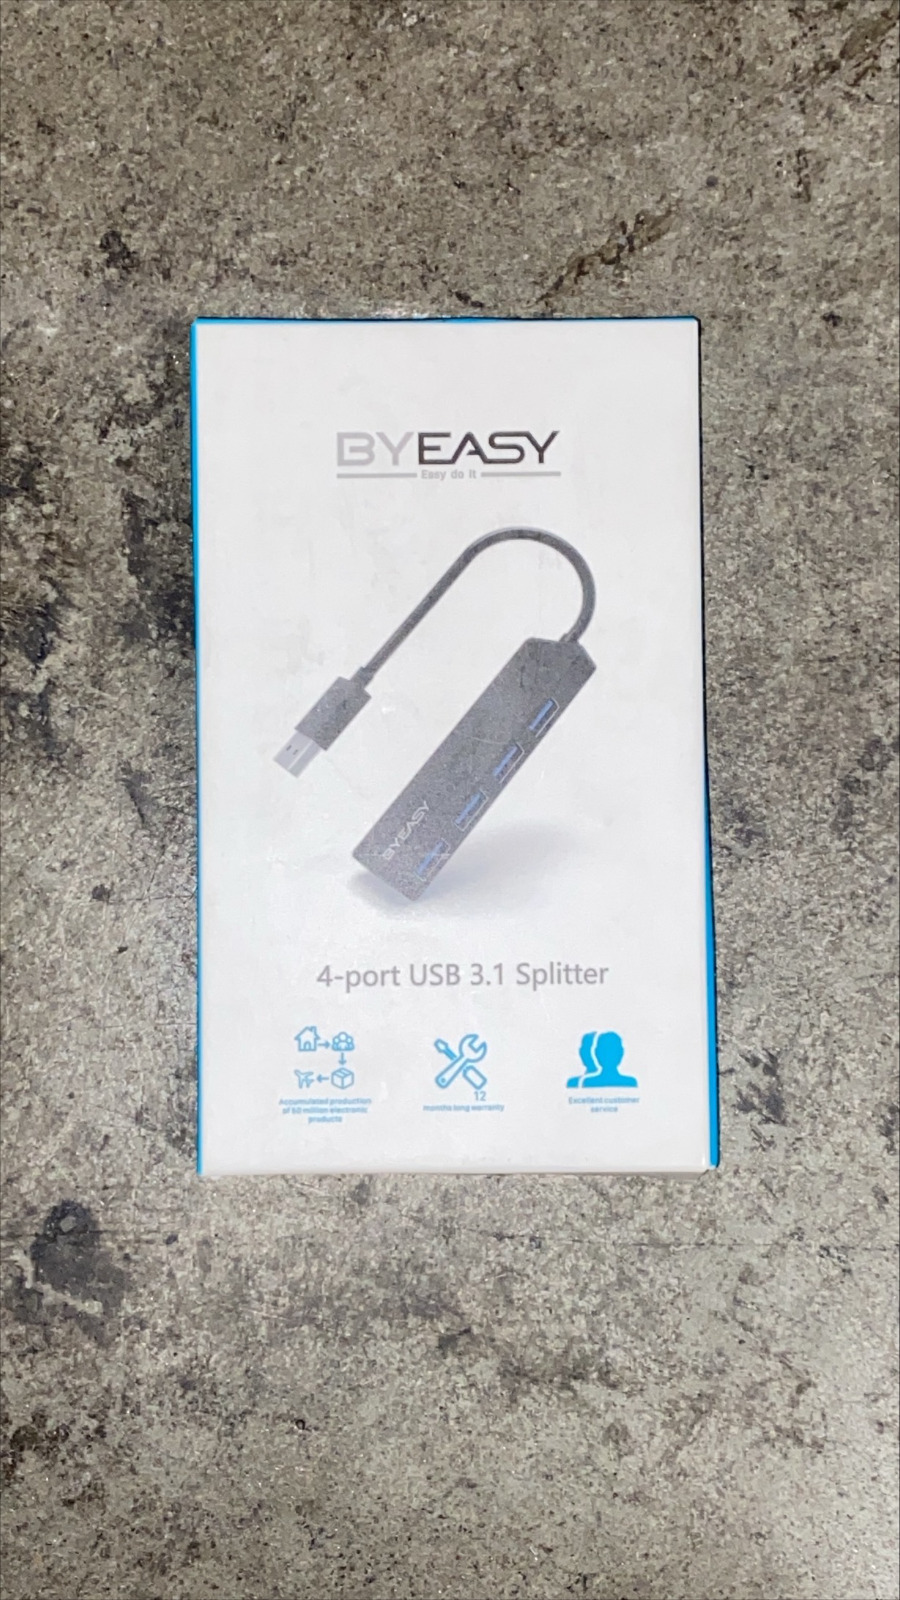 BYEASY 4-port USB 3.1 Splitter